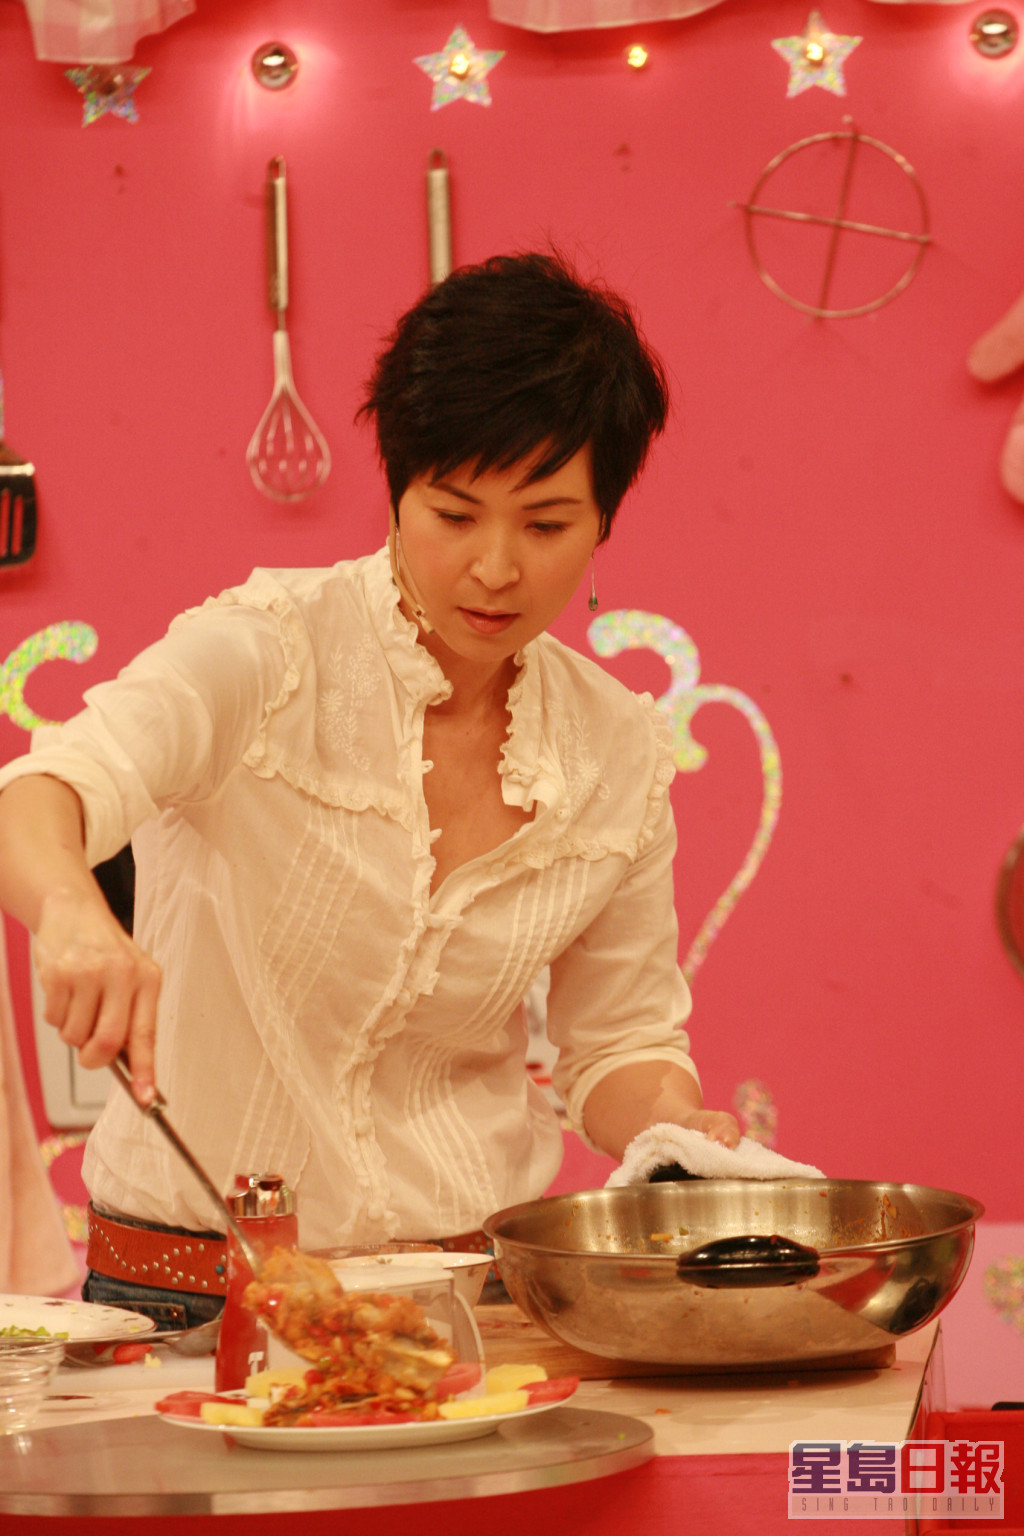  苏玉华曾于综艺节目《美女厨房》大展厨艺，因而被冠以「美女厨神」之称。